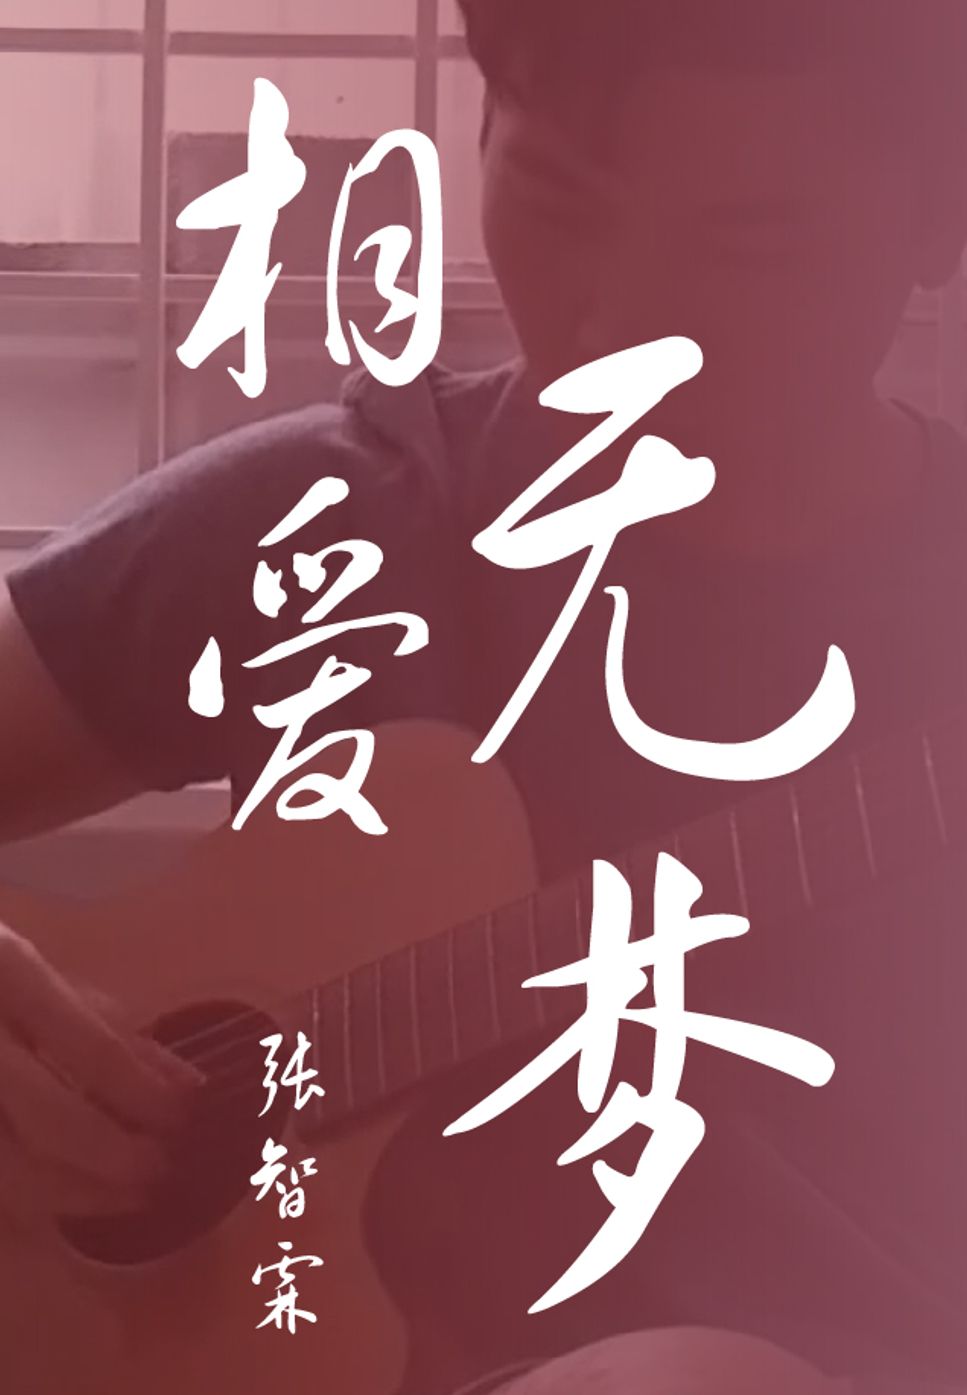 Julian Cheung Zhang Zhi Lin - Xiang Ai Wu Meng (Fingerstyle) by HowMing